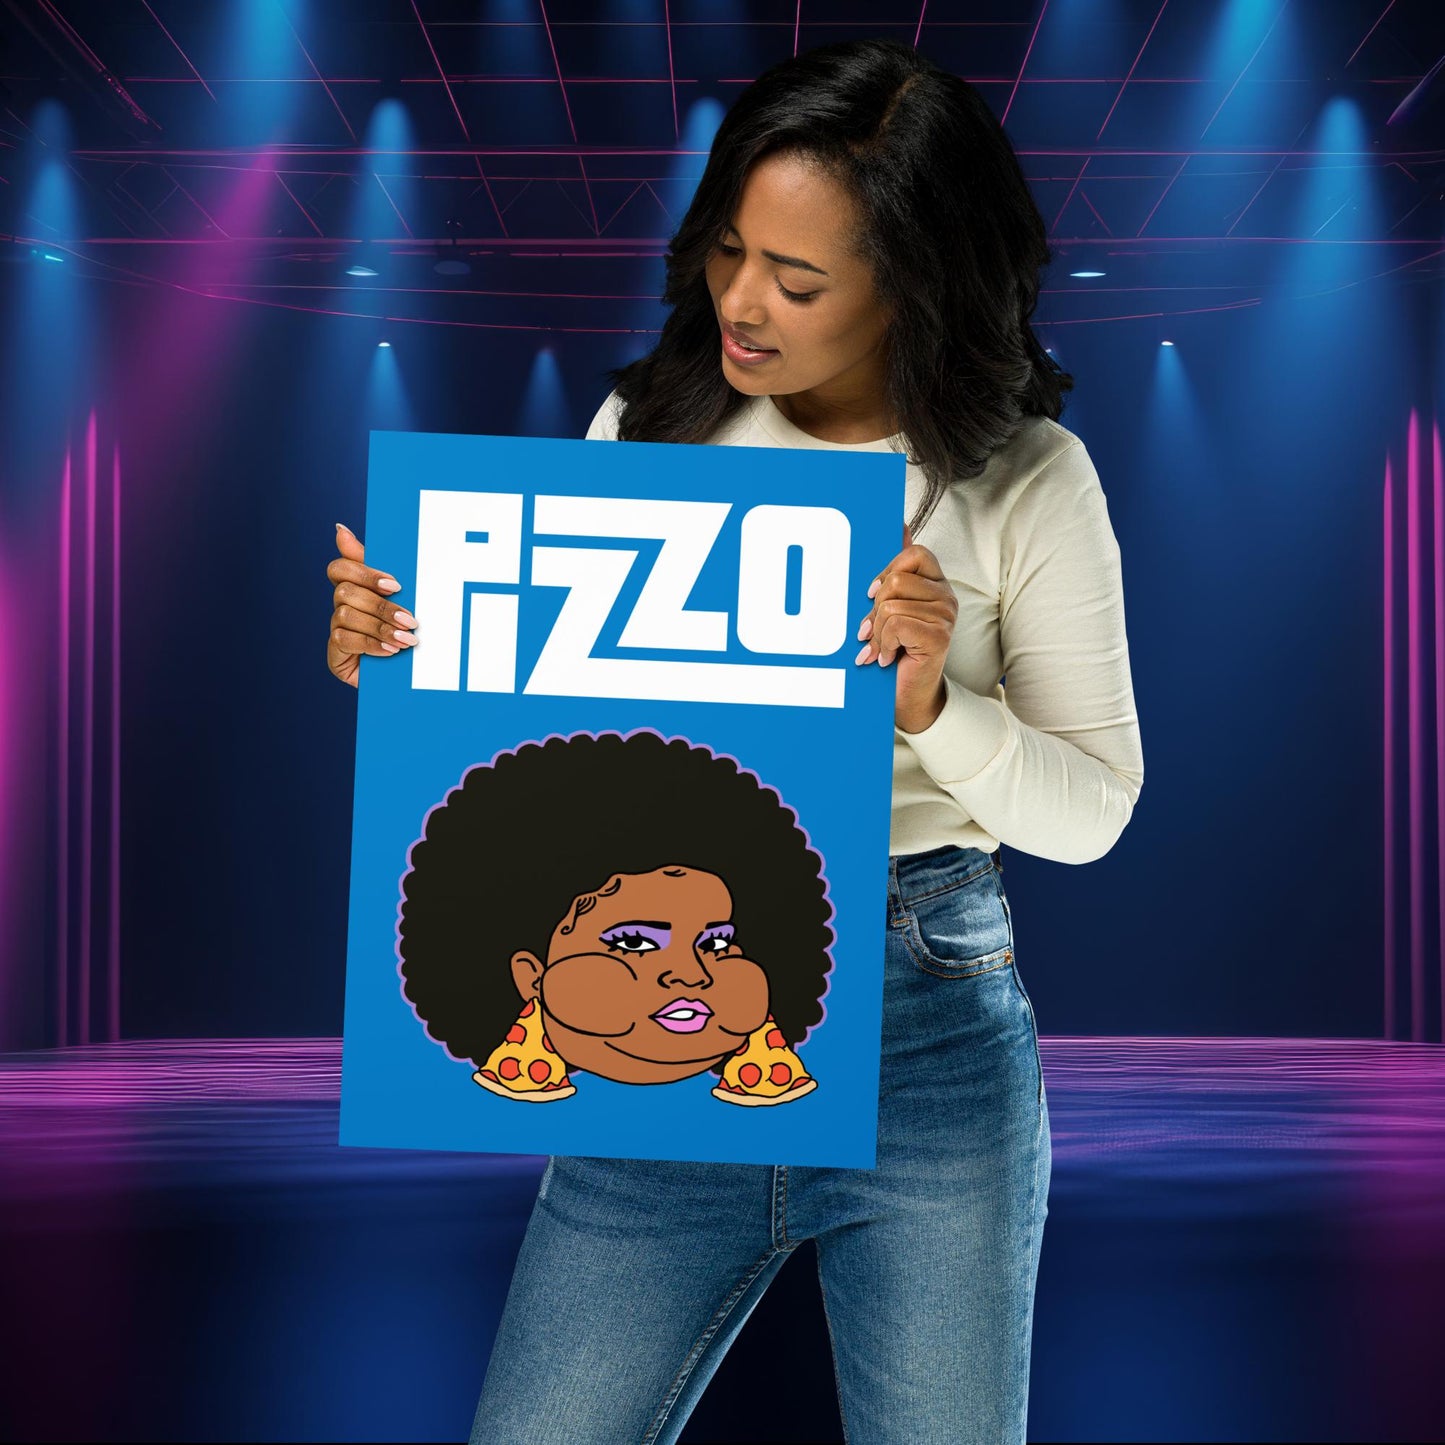 Pizzo Lizzo Pizza Lizzo Merch Lizzo Gift Song Lyrics Lizzo Poster Next Cult Brand